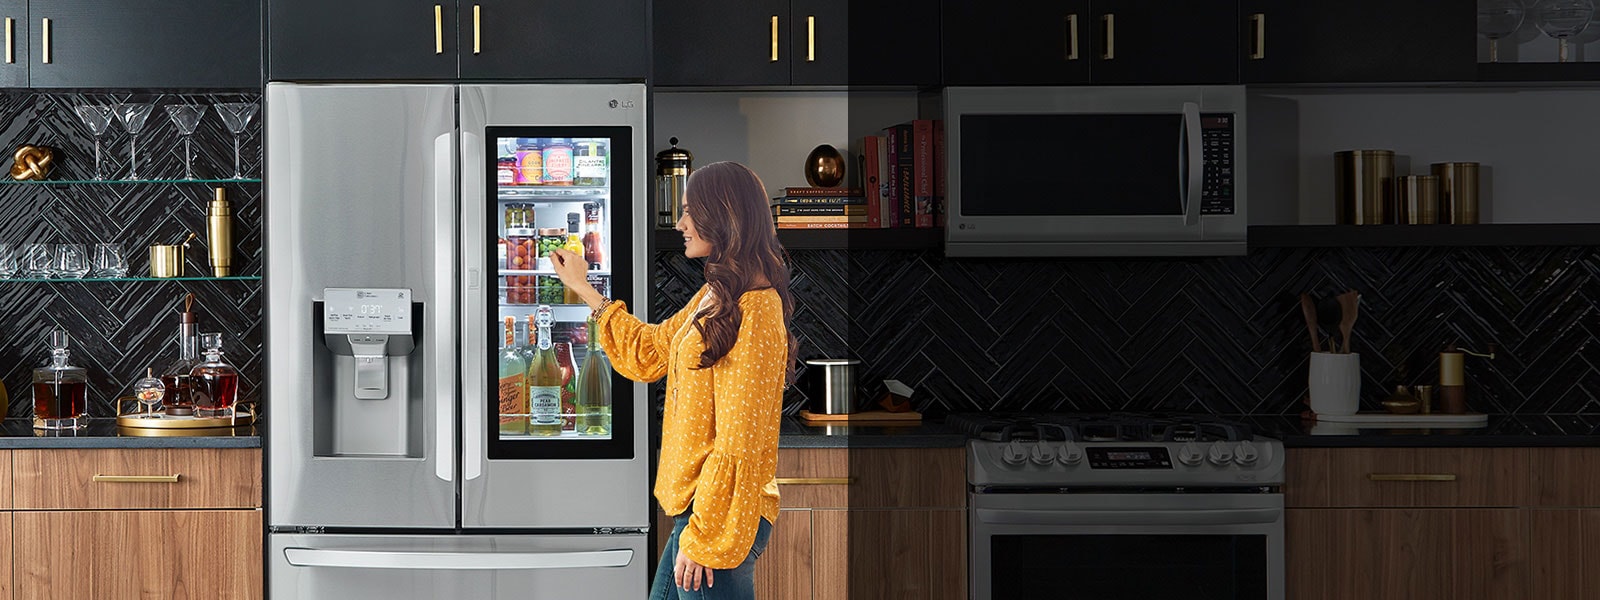 LG InstaView™ Refrigerators